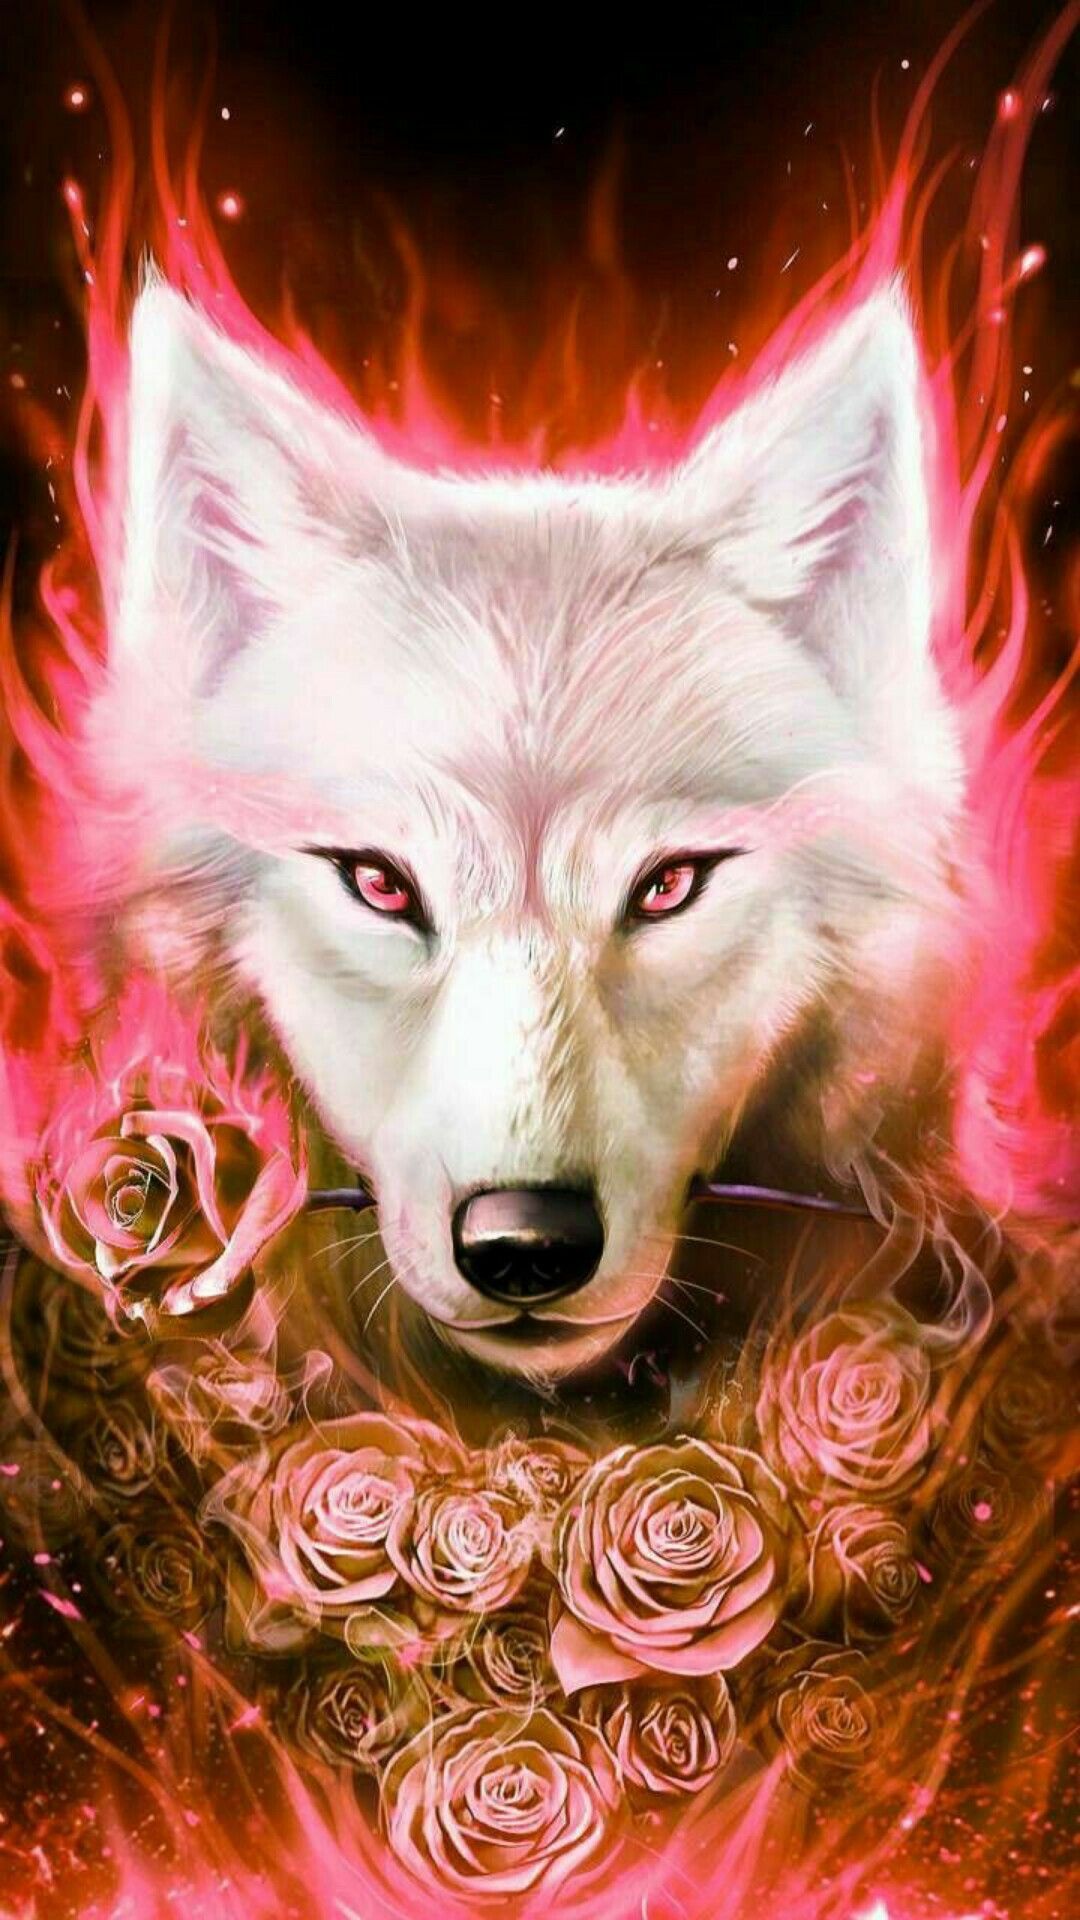 Phone Background 21. Wolf wallpaper, Wolf spirit animal, Wolf spirit